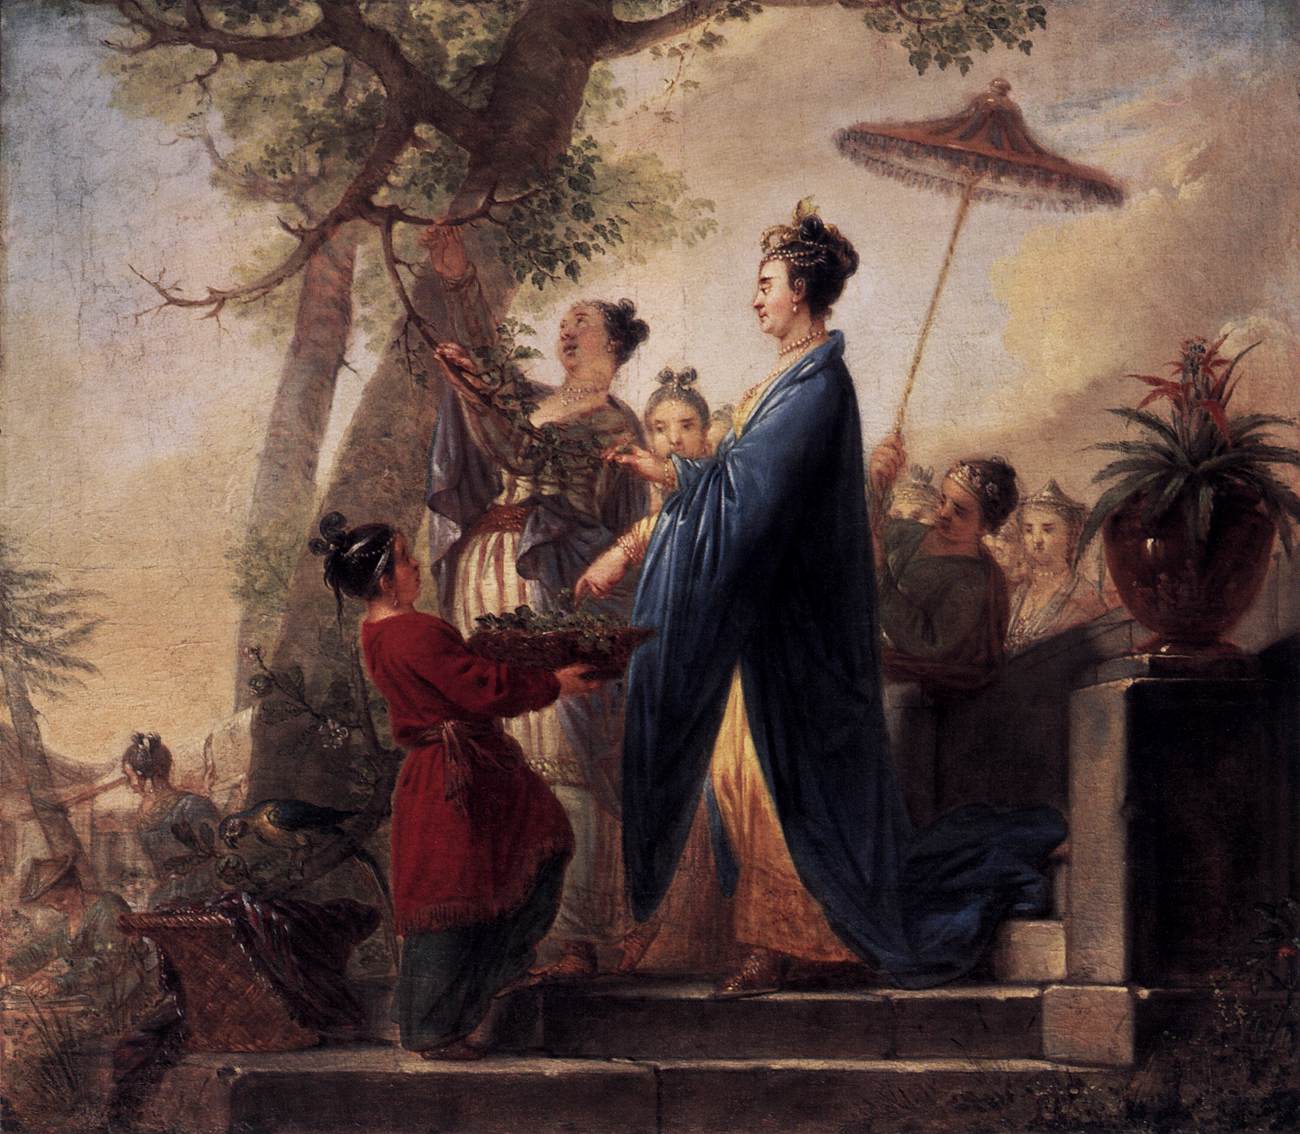 A imperatriz da China sacrificando folhas de amoreira